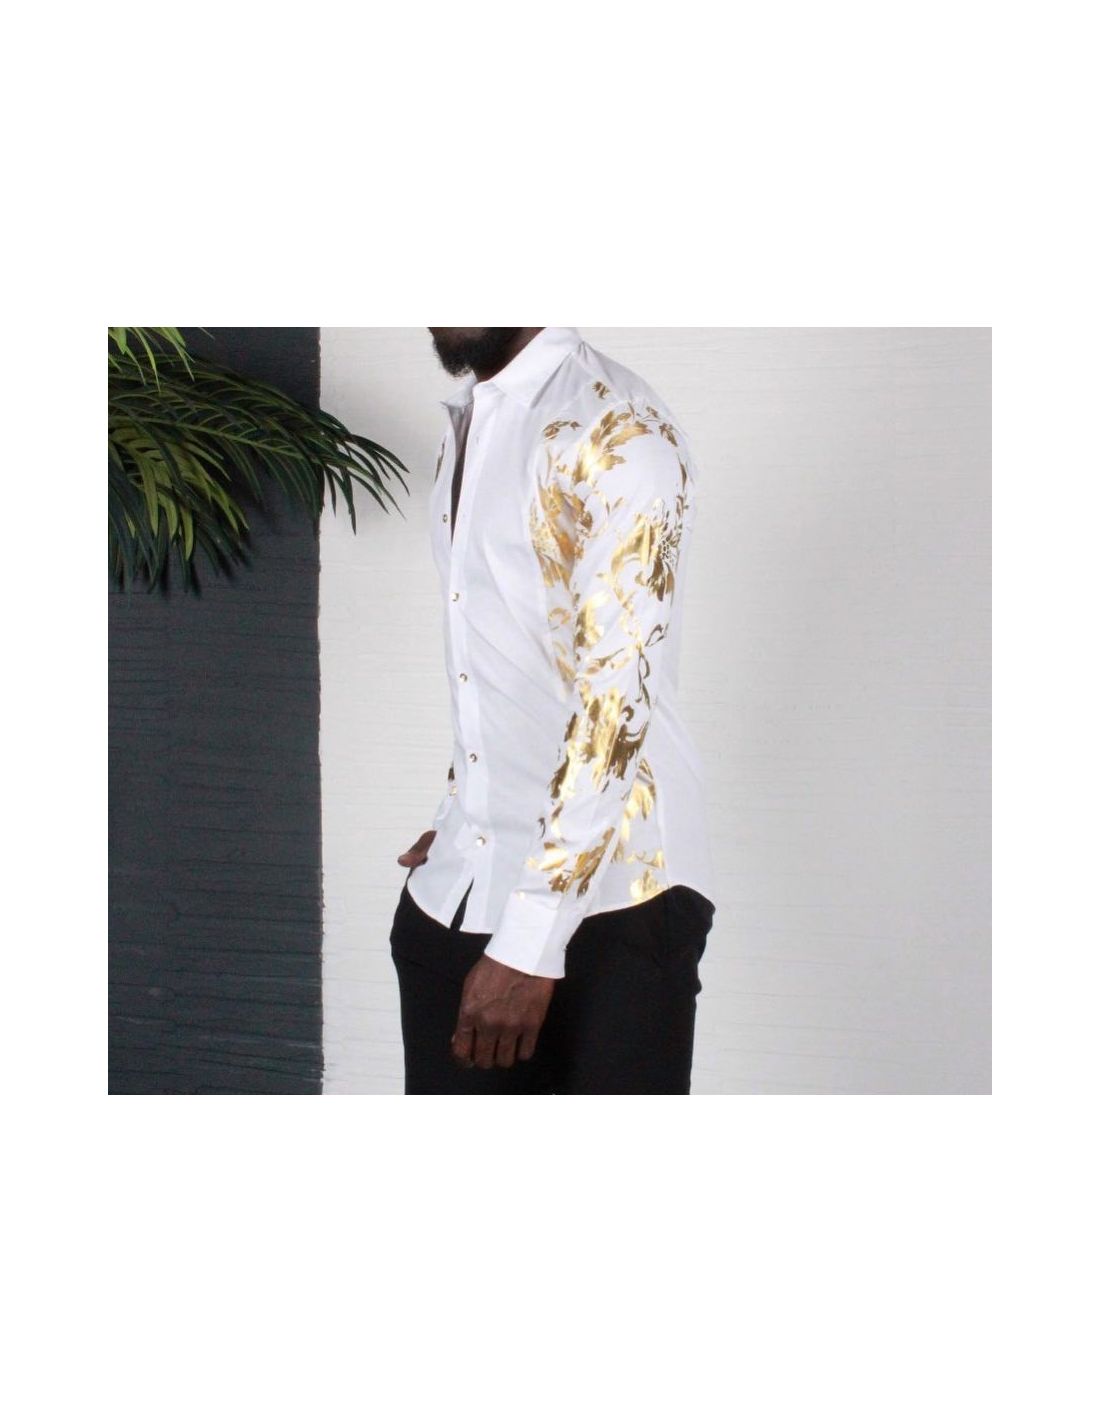 Chemise blanche pour homme avec motif de couleur or sur les épaules